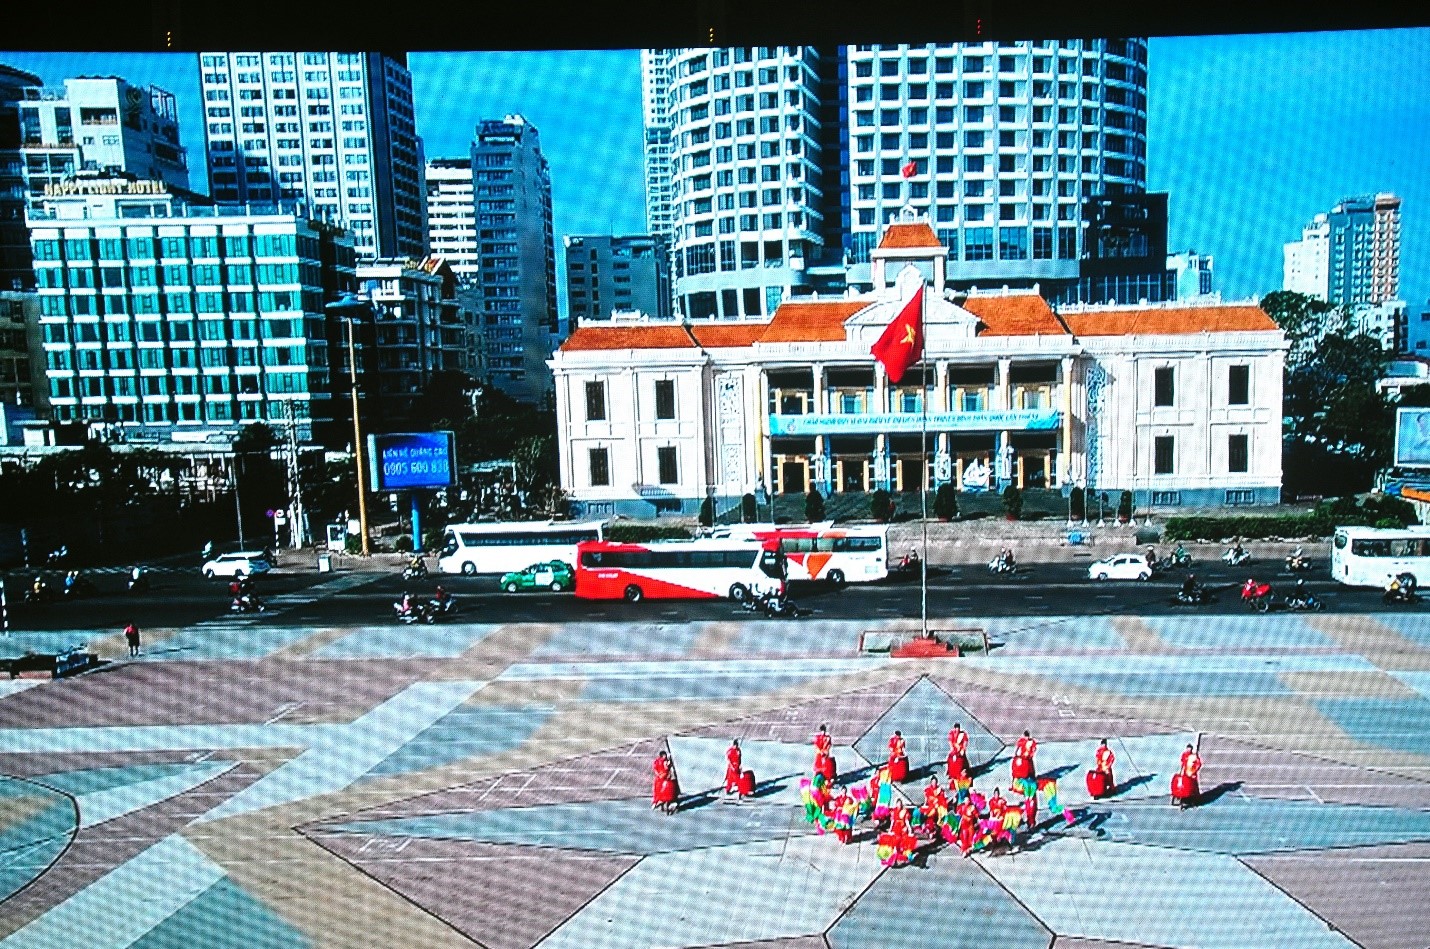 Trung Tâm Hội Nghị 46 Trần Phú Nha Trang, nơi diễn ra Liên Hoan Truyền Hình  (ảnh cắt clip Phóng sự giới thiệu về Liên Hoan Truyền hình)